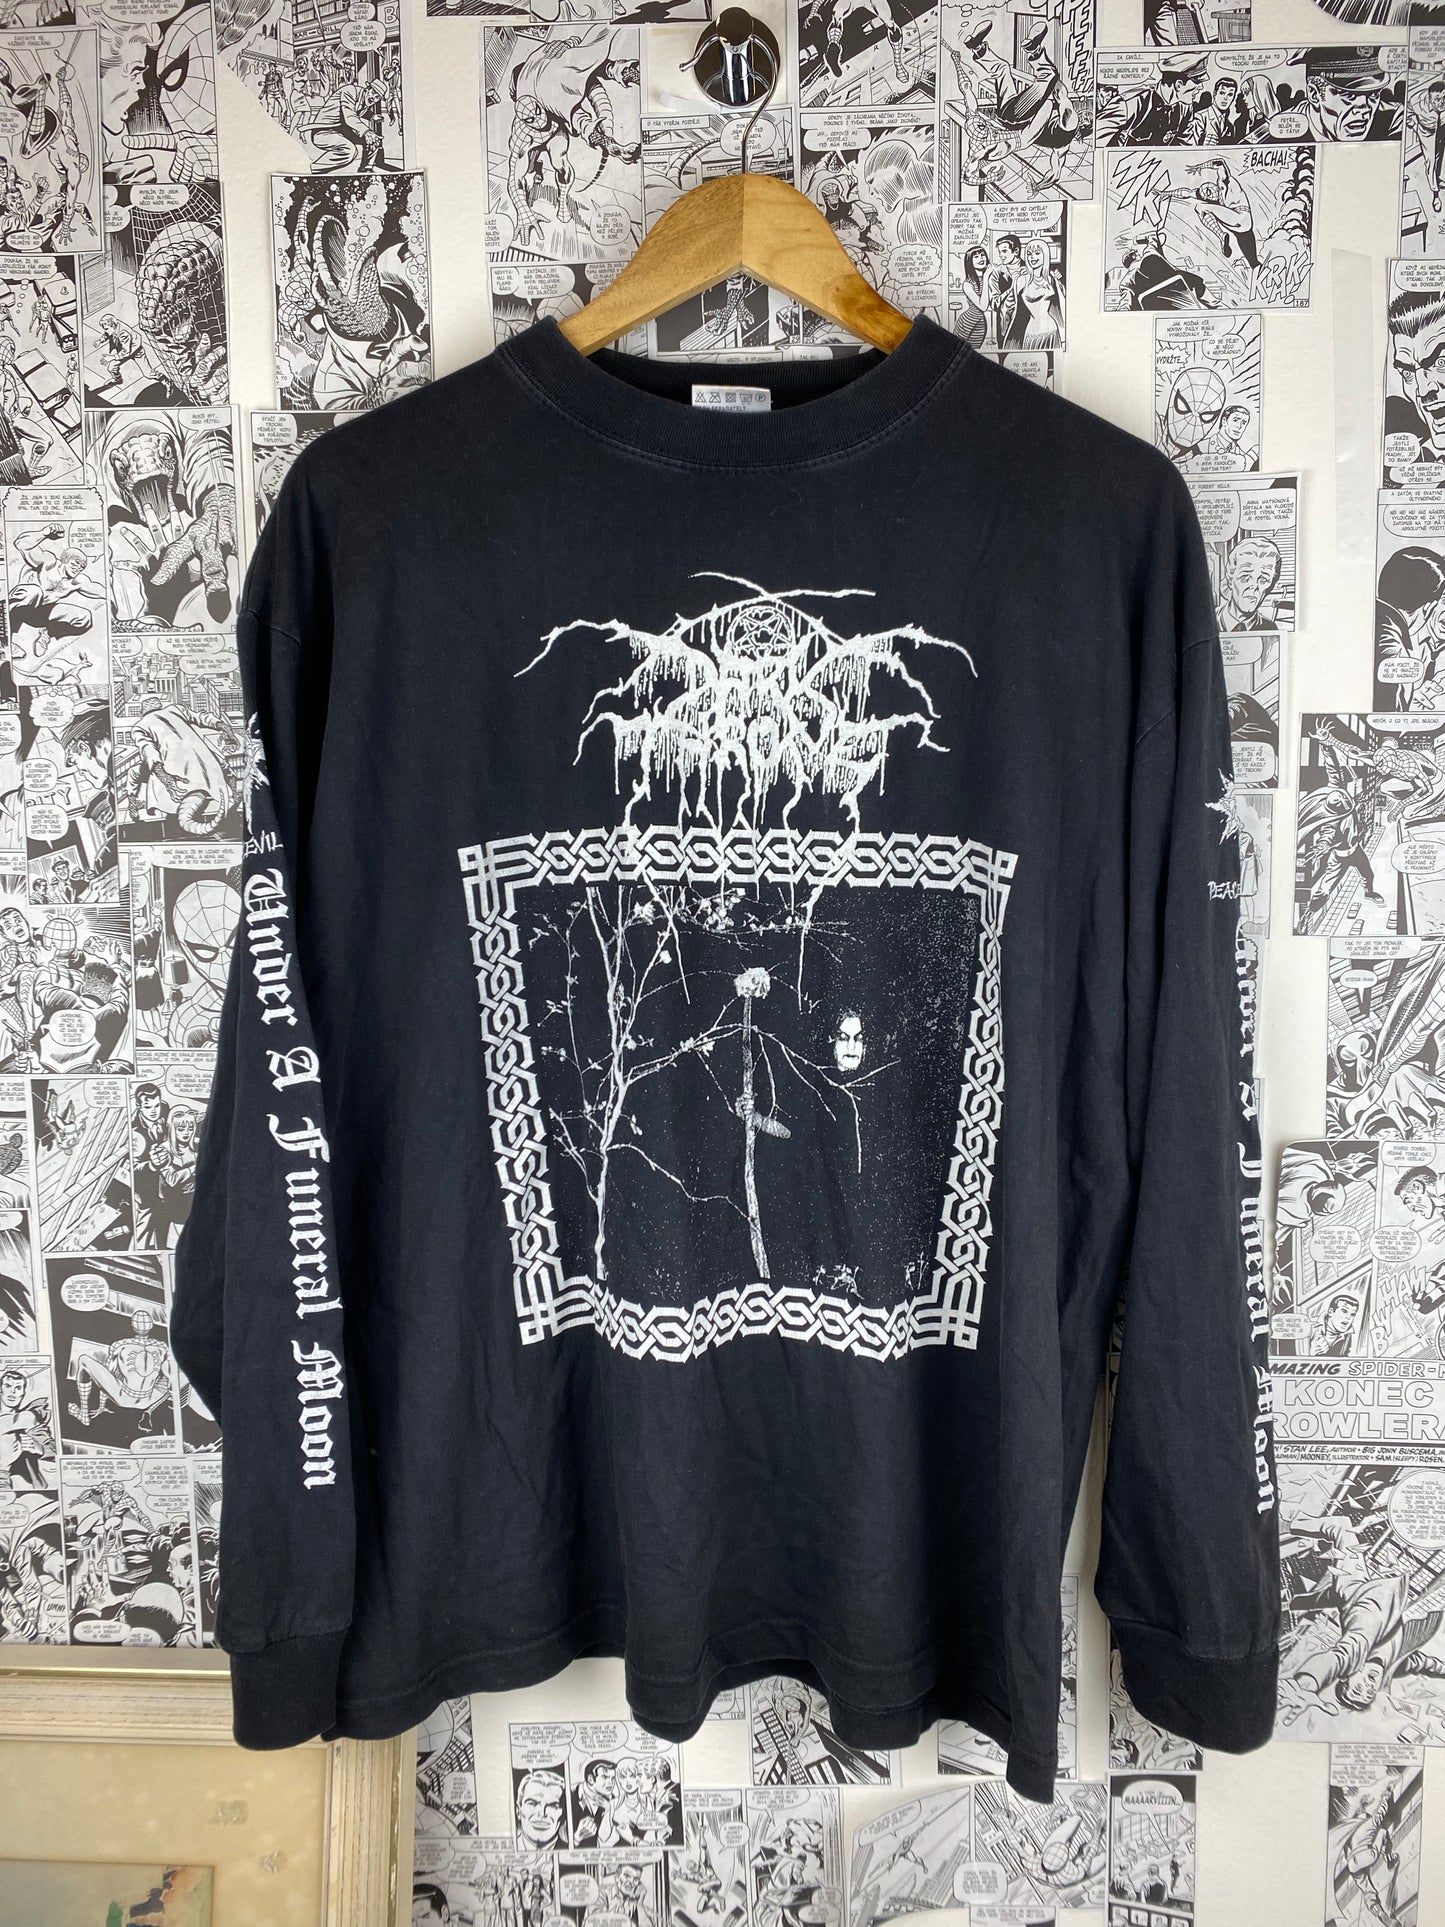 Vintage Darkthrone “Under A Funeral Moon - Taakeferd” 1992 - size L